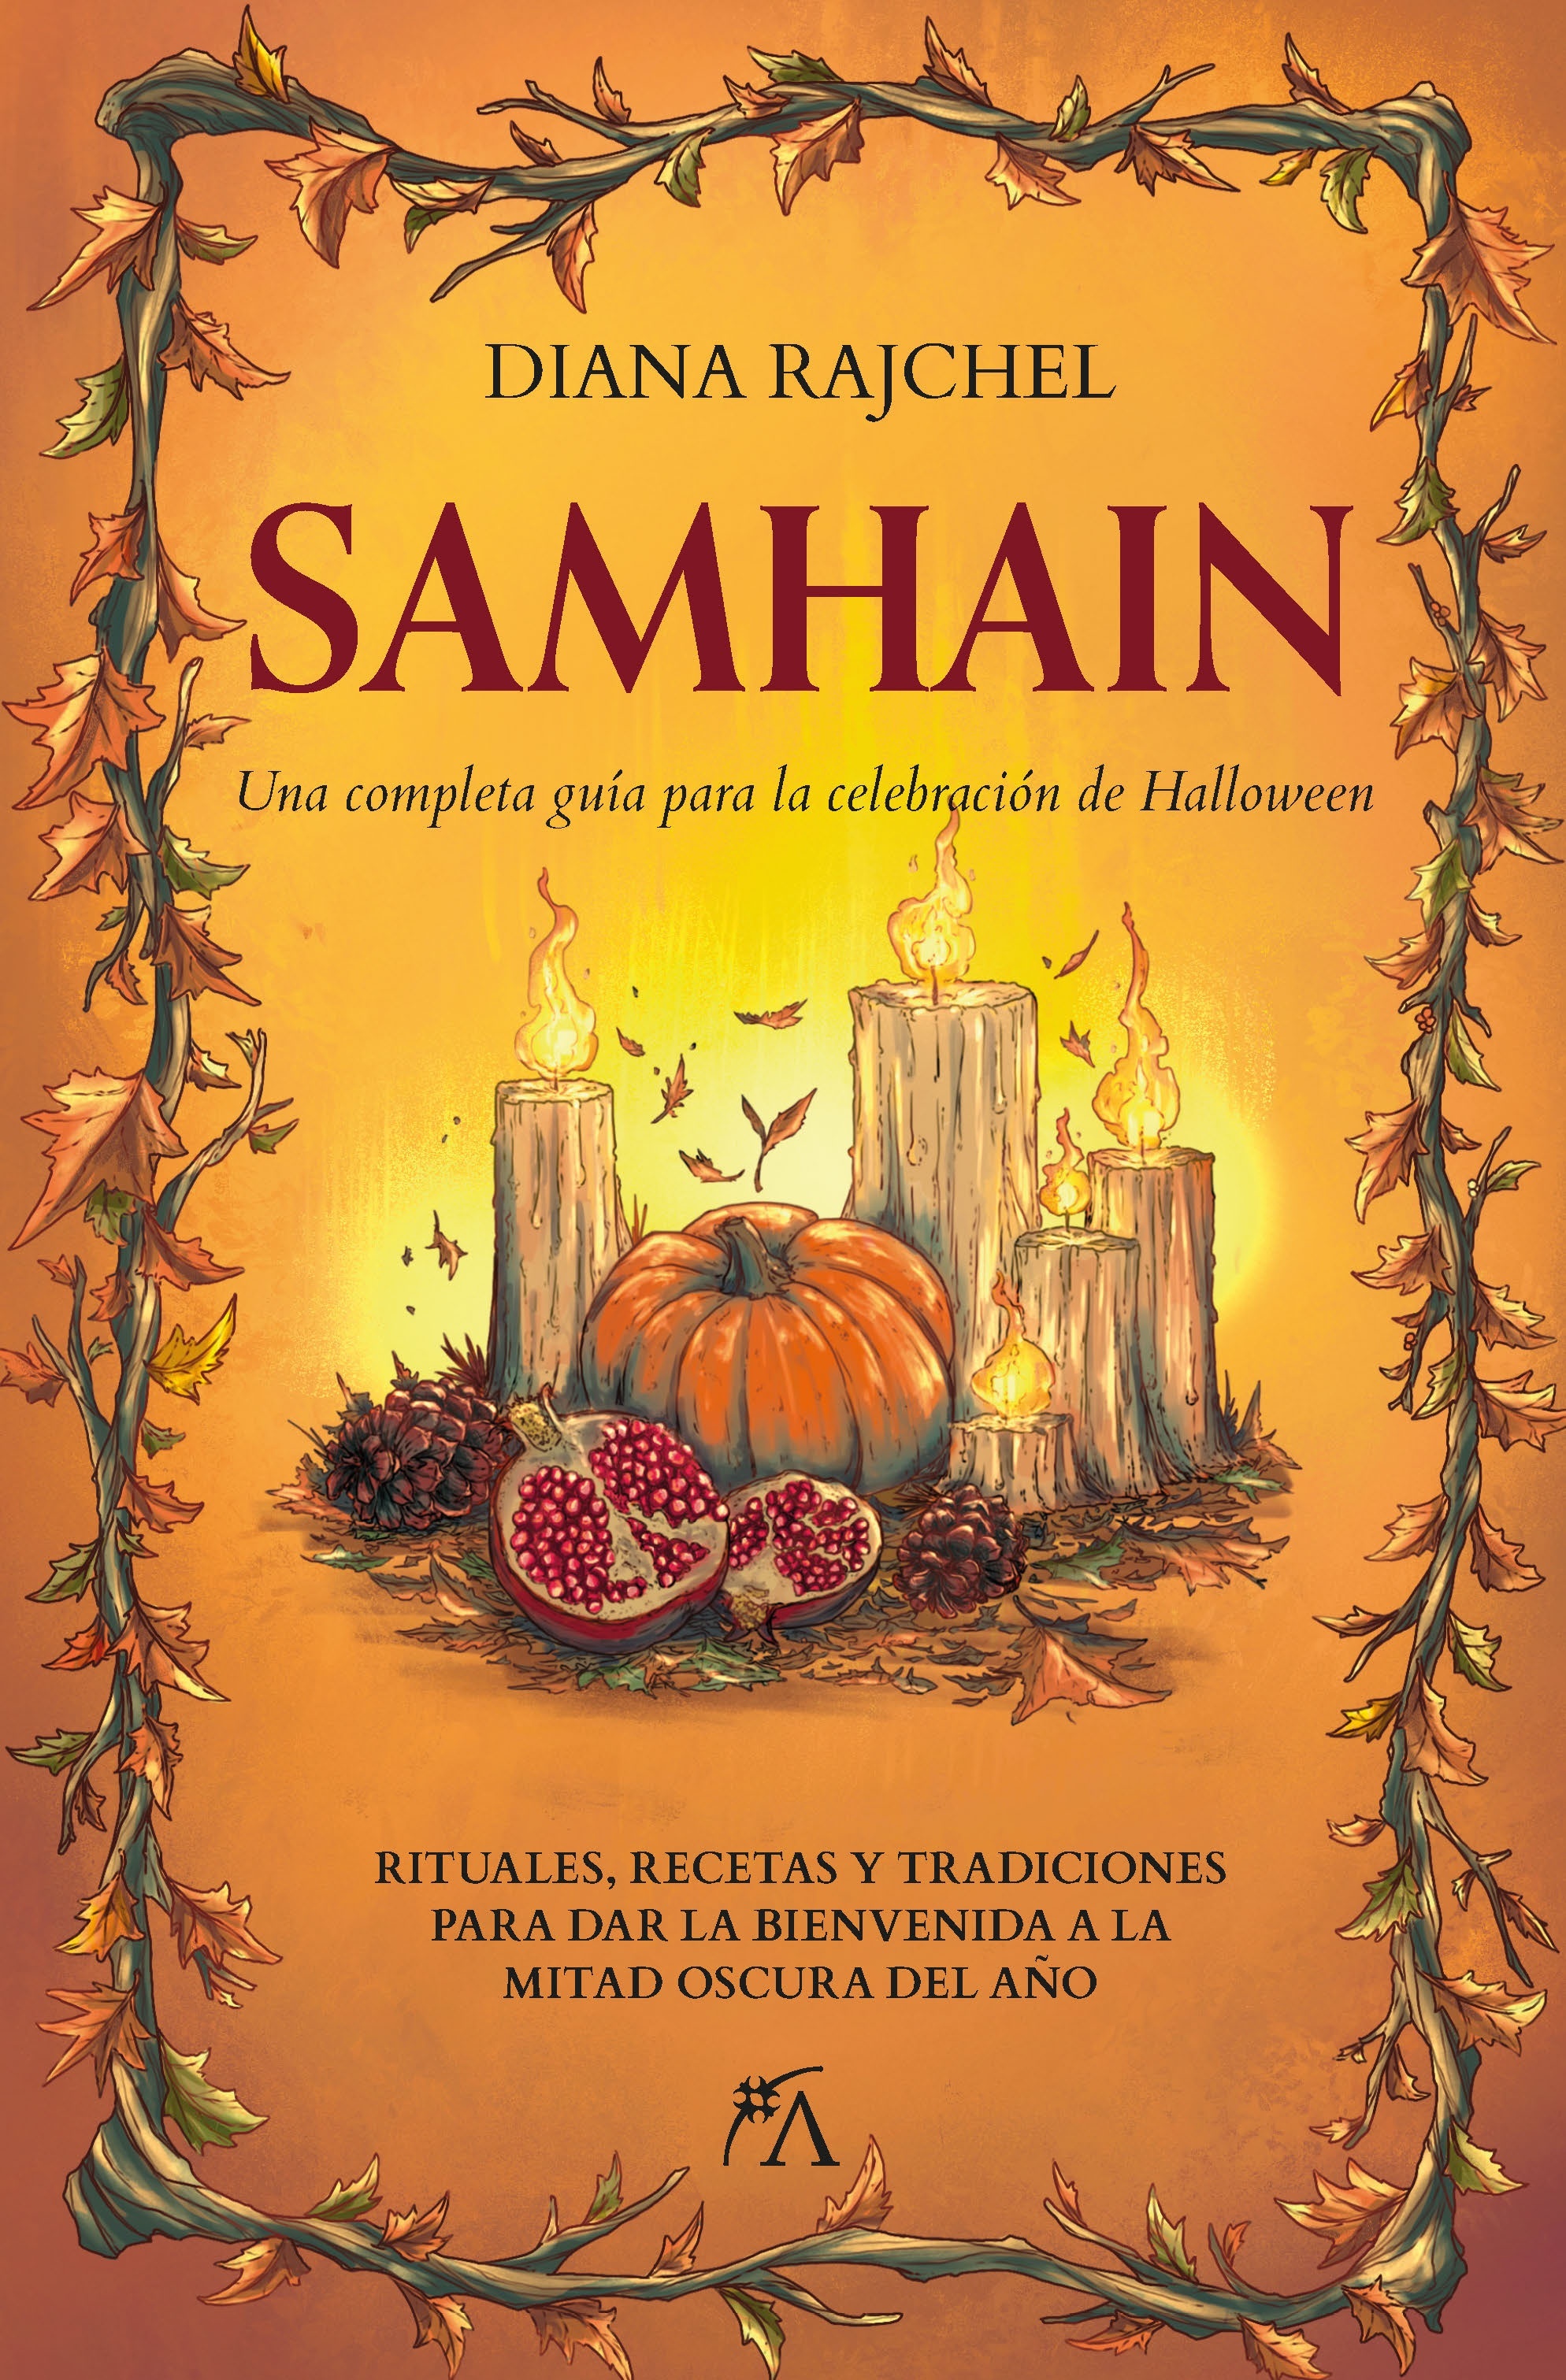 Samhain "Una completa guía para la celebración de Halloween". 